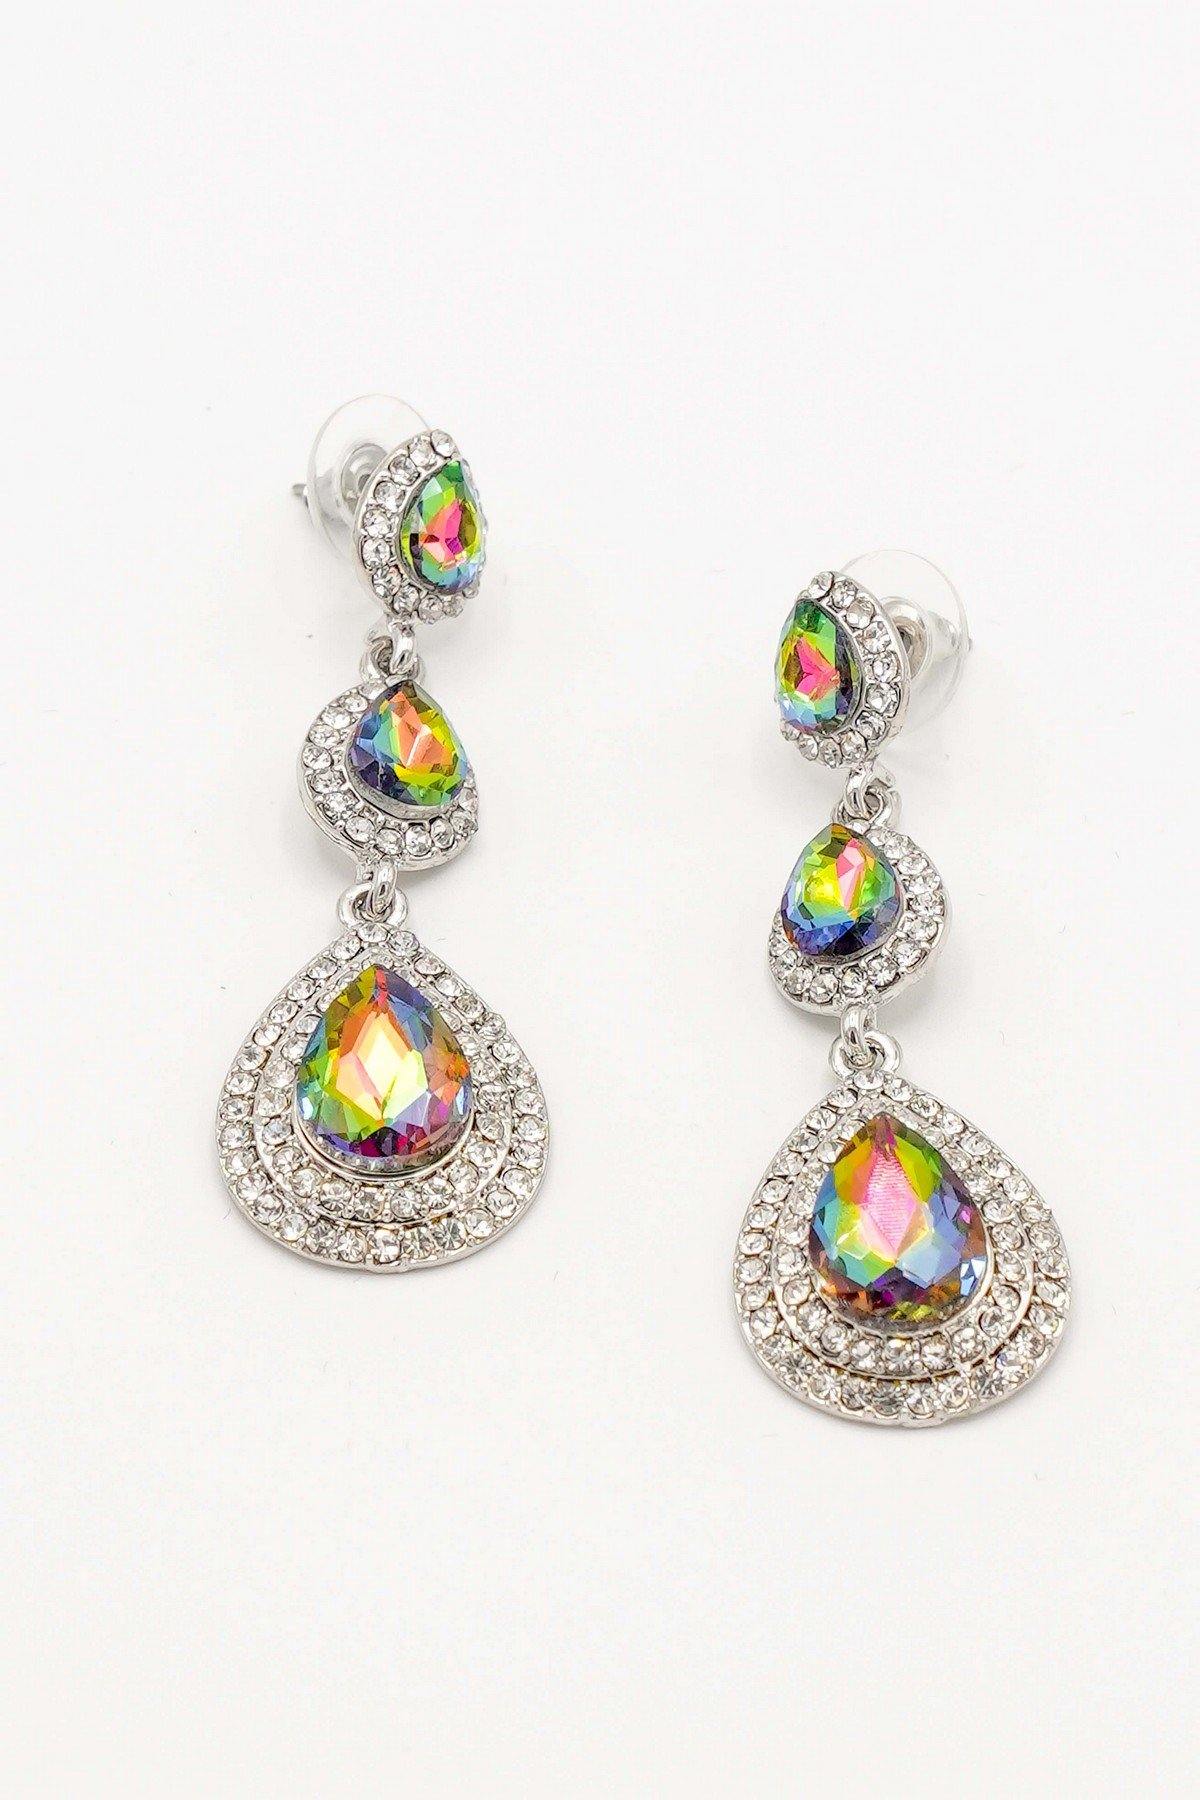 Clear Diamante Teardrop Rhinestone Earrings - The Dress Outlet